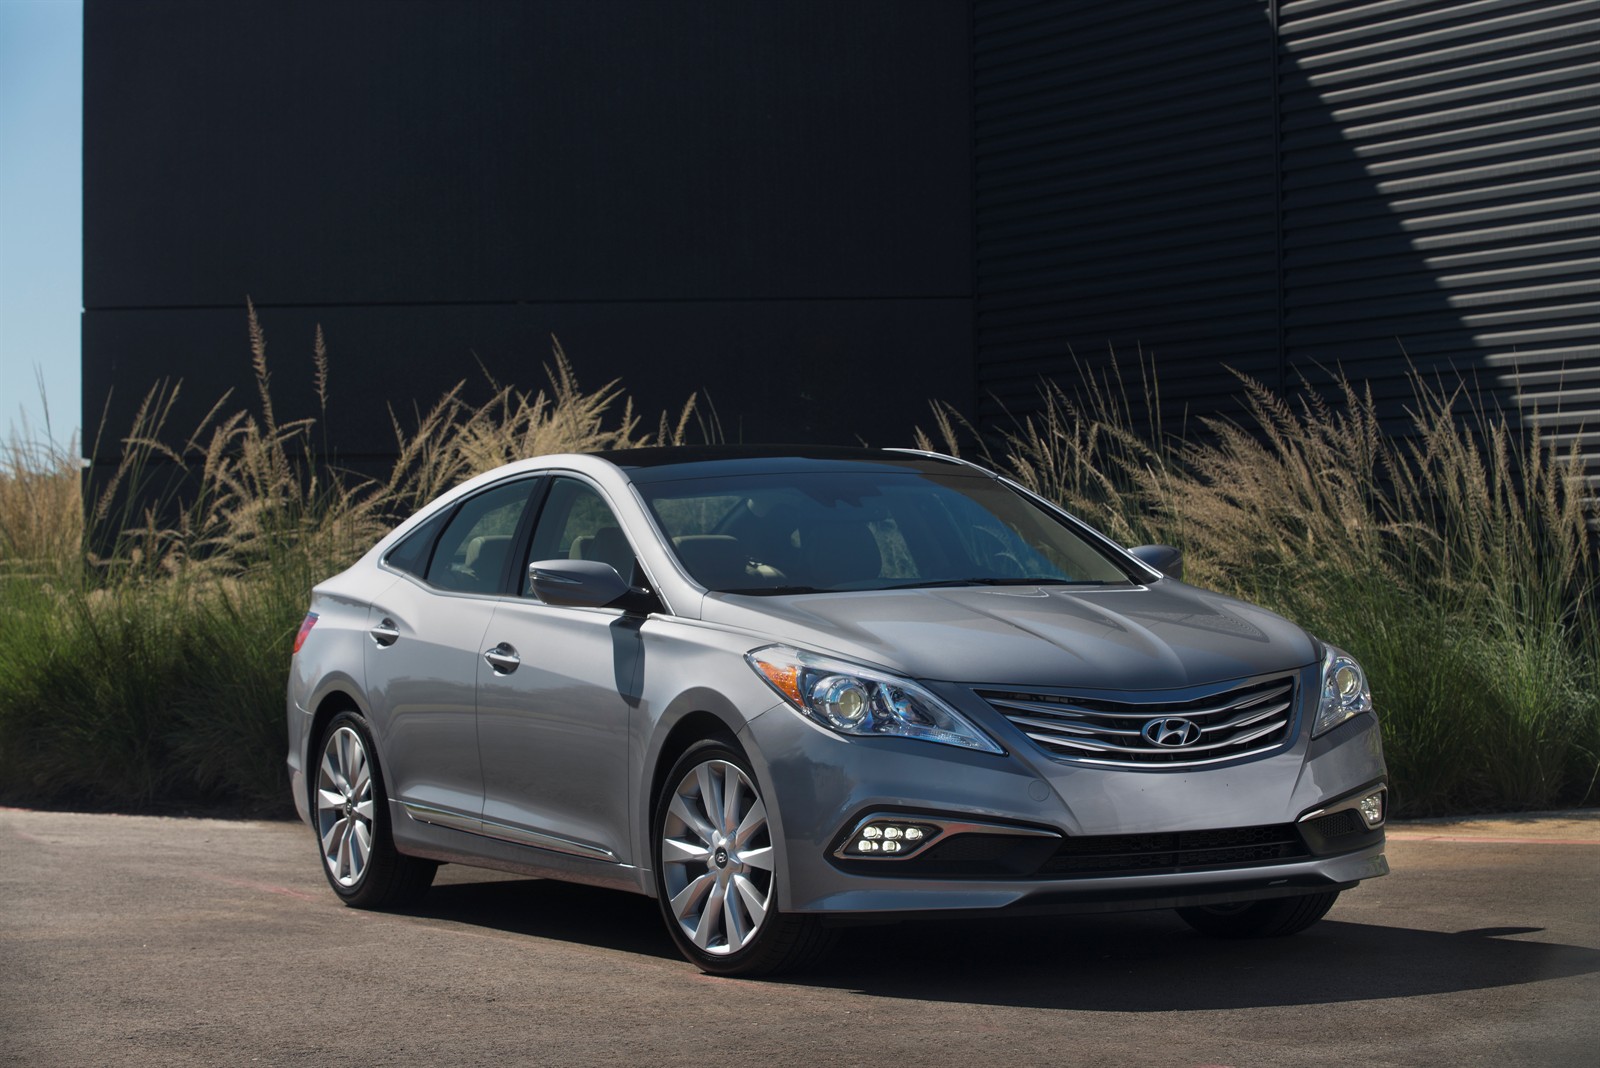 US: Hyundai Launched the Refreshed 2015 Azera - Korean Car Blog